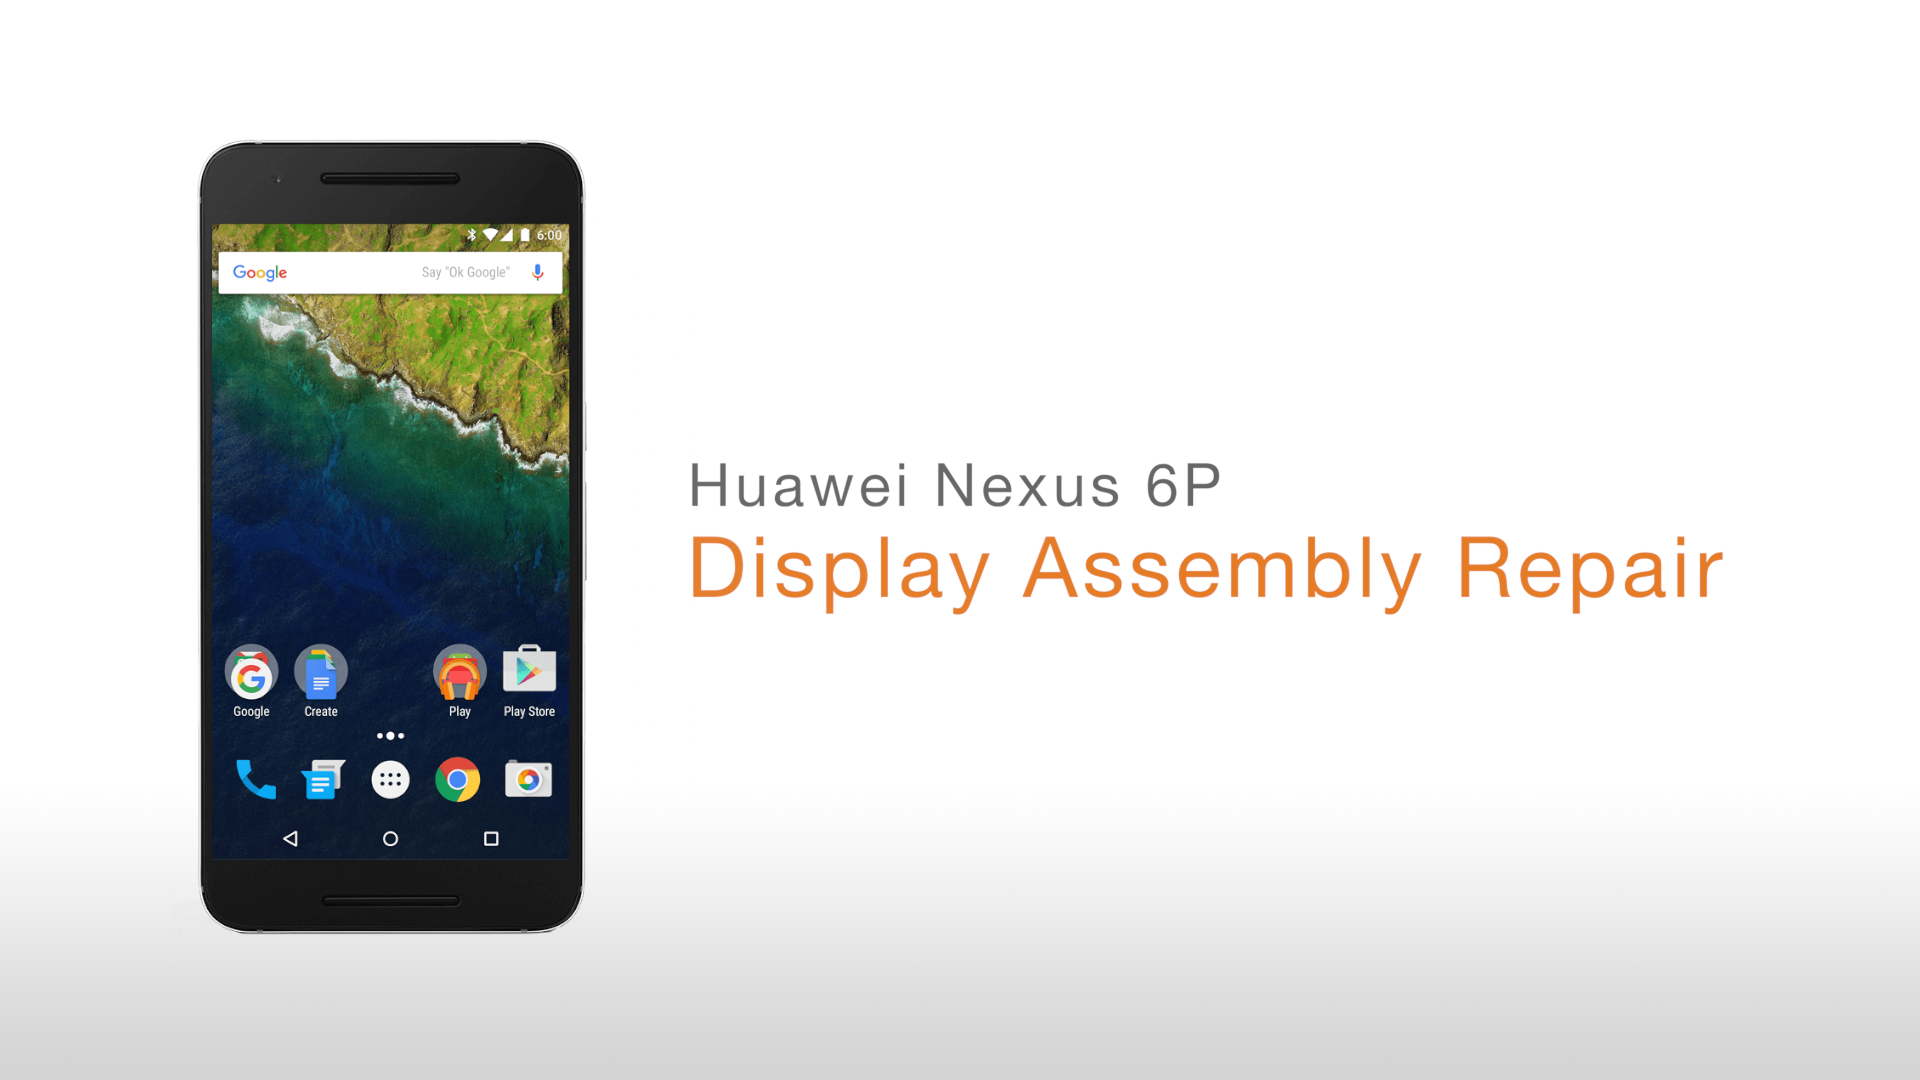 Huawei Nexus 6P Display Assembly Repair